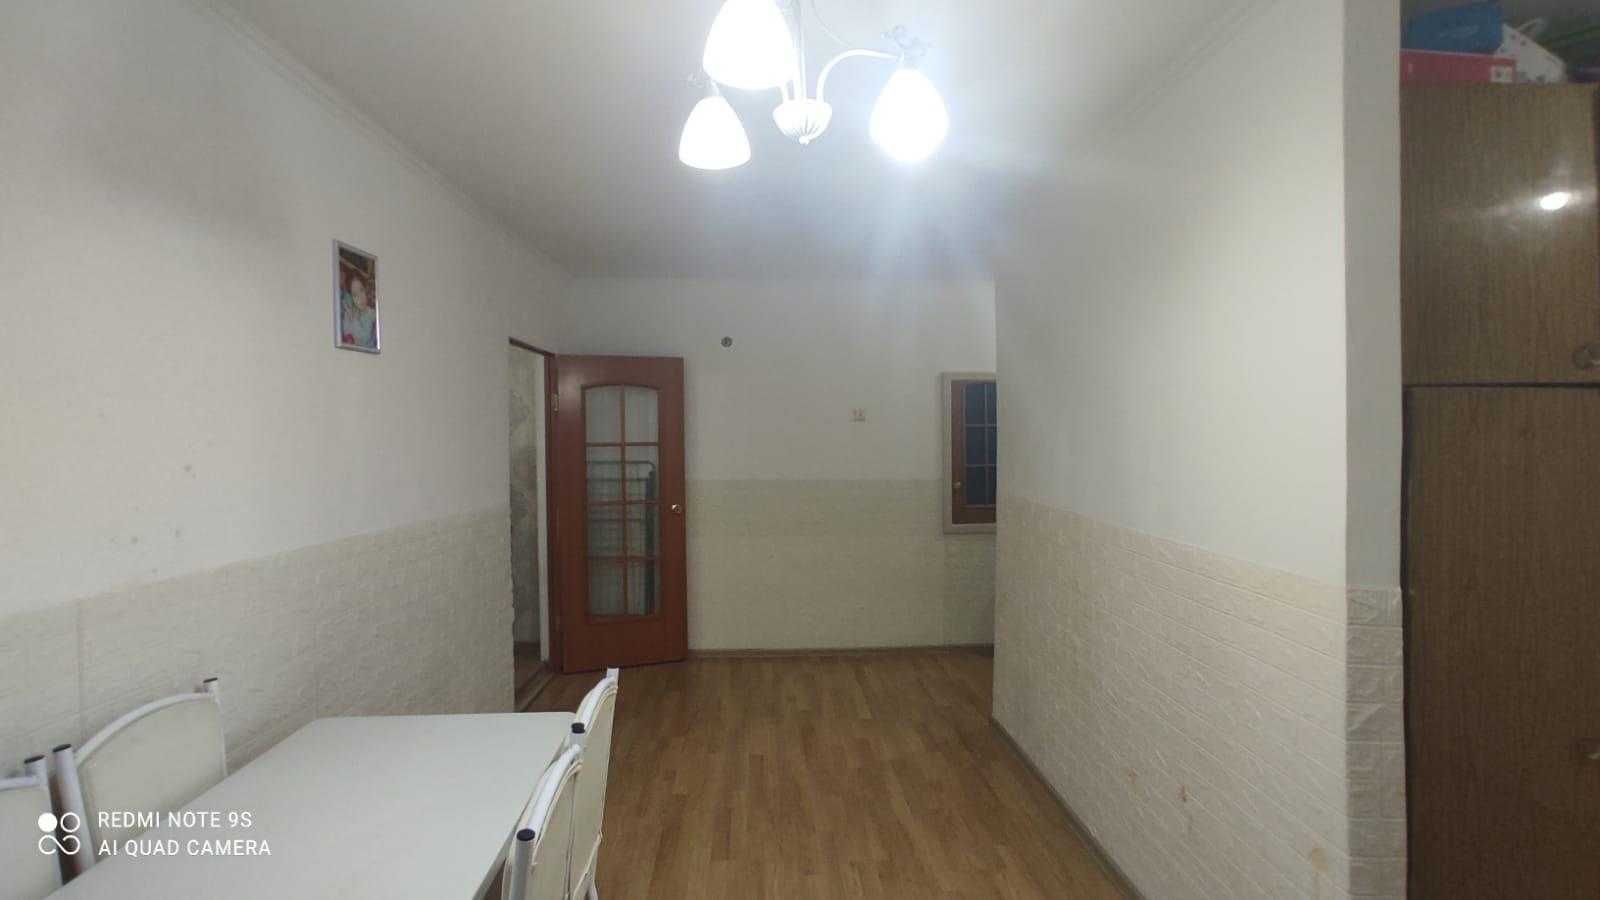 Продам 3-х комнатную квартиру в Сортировке